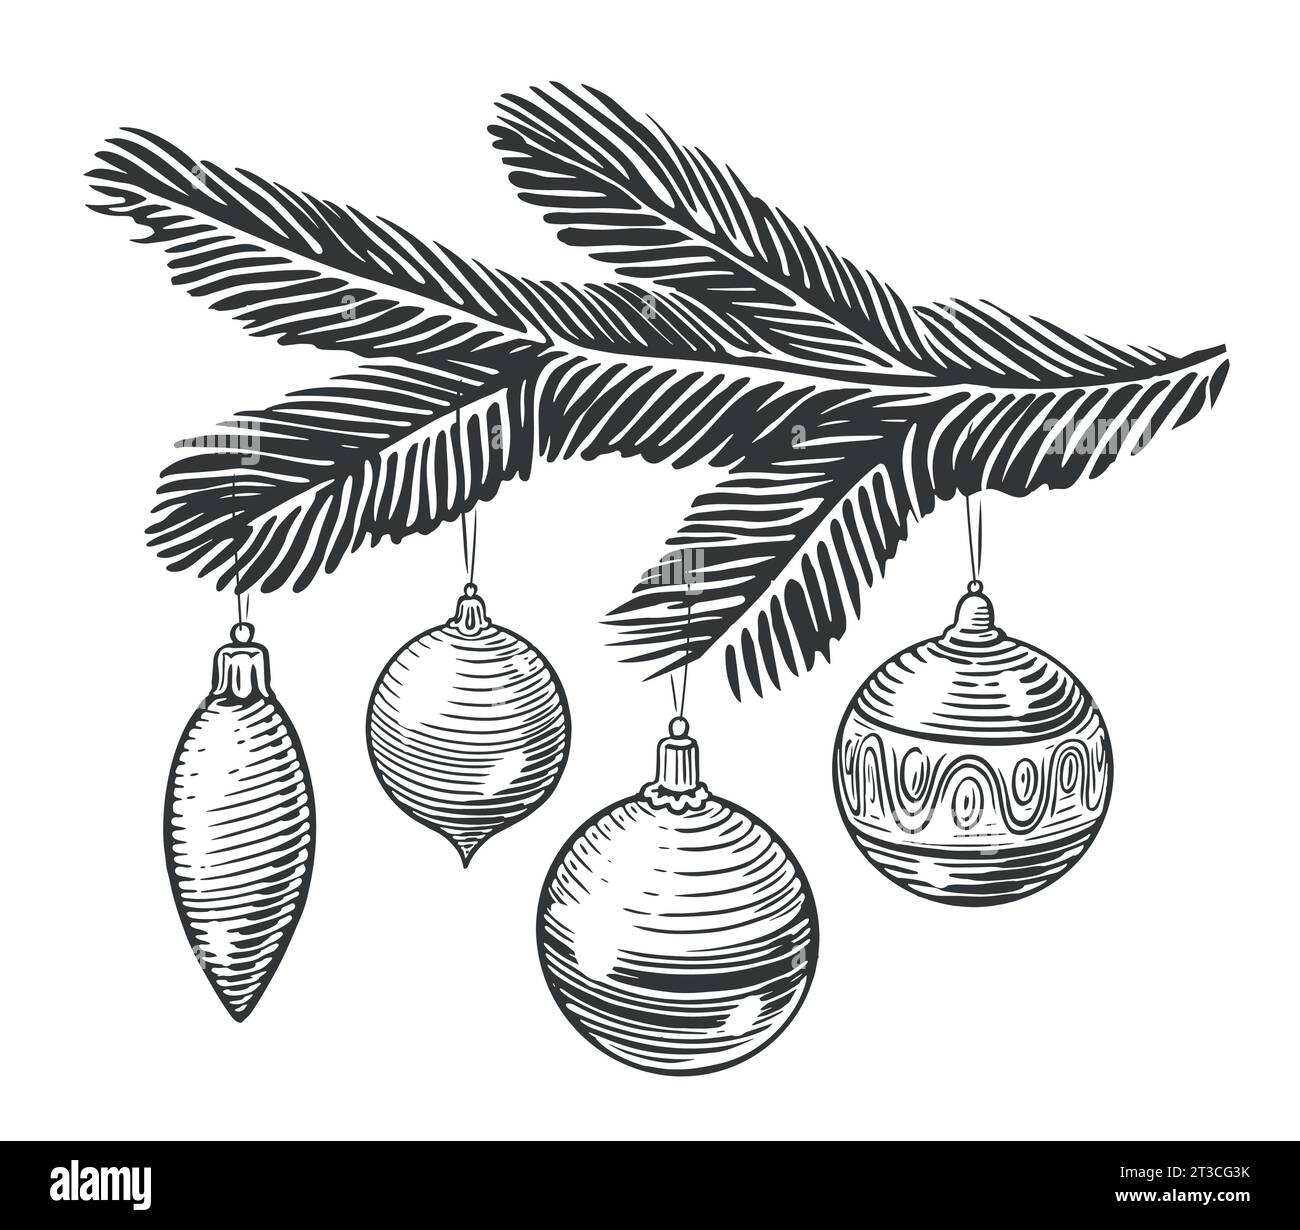 Weihnachtsdekoration Kugeln und Kugeln hängen an einem Tannenzweig. Happy Holidays skizzieren Vintage Vektor Illustration Stock Vektor